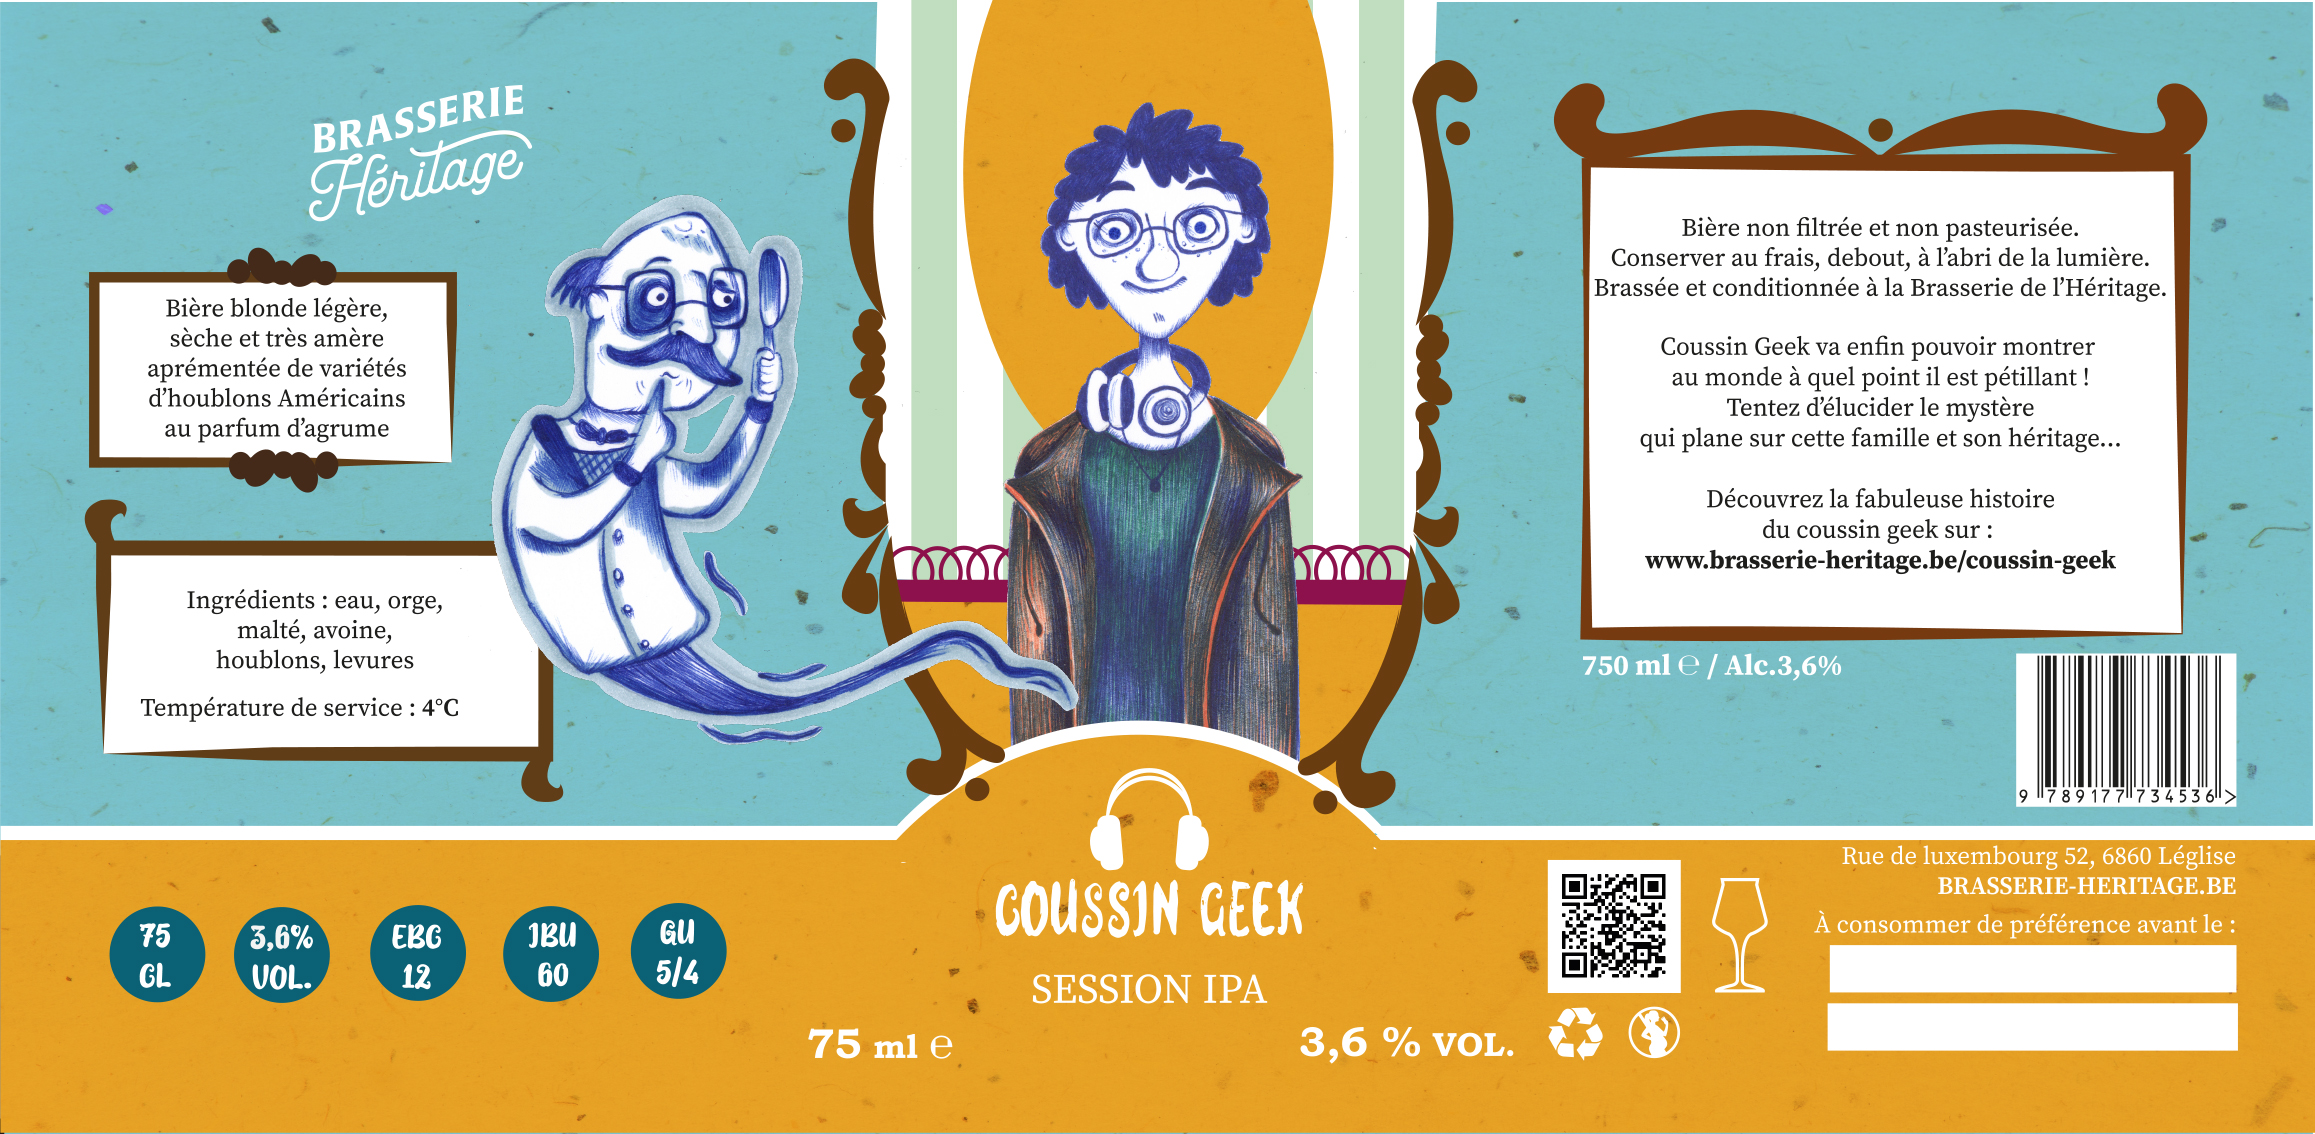 vectoriser etiquette biere - brasserie héritage - COUSSIN GEEK